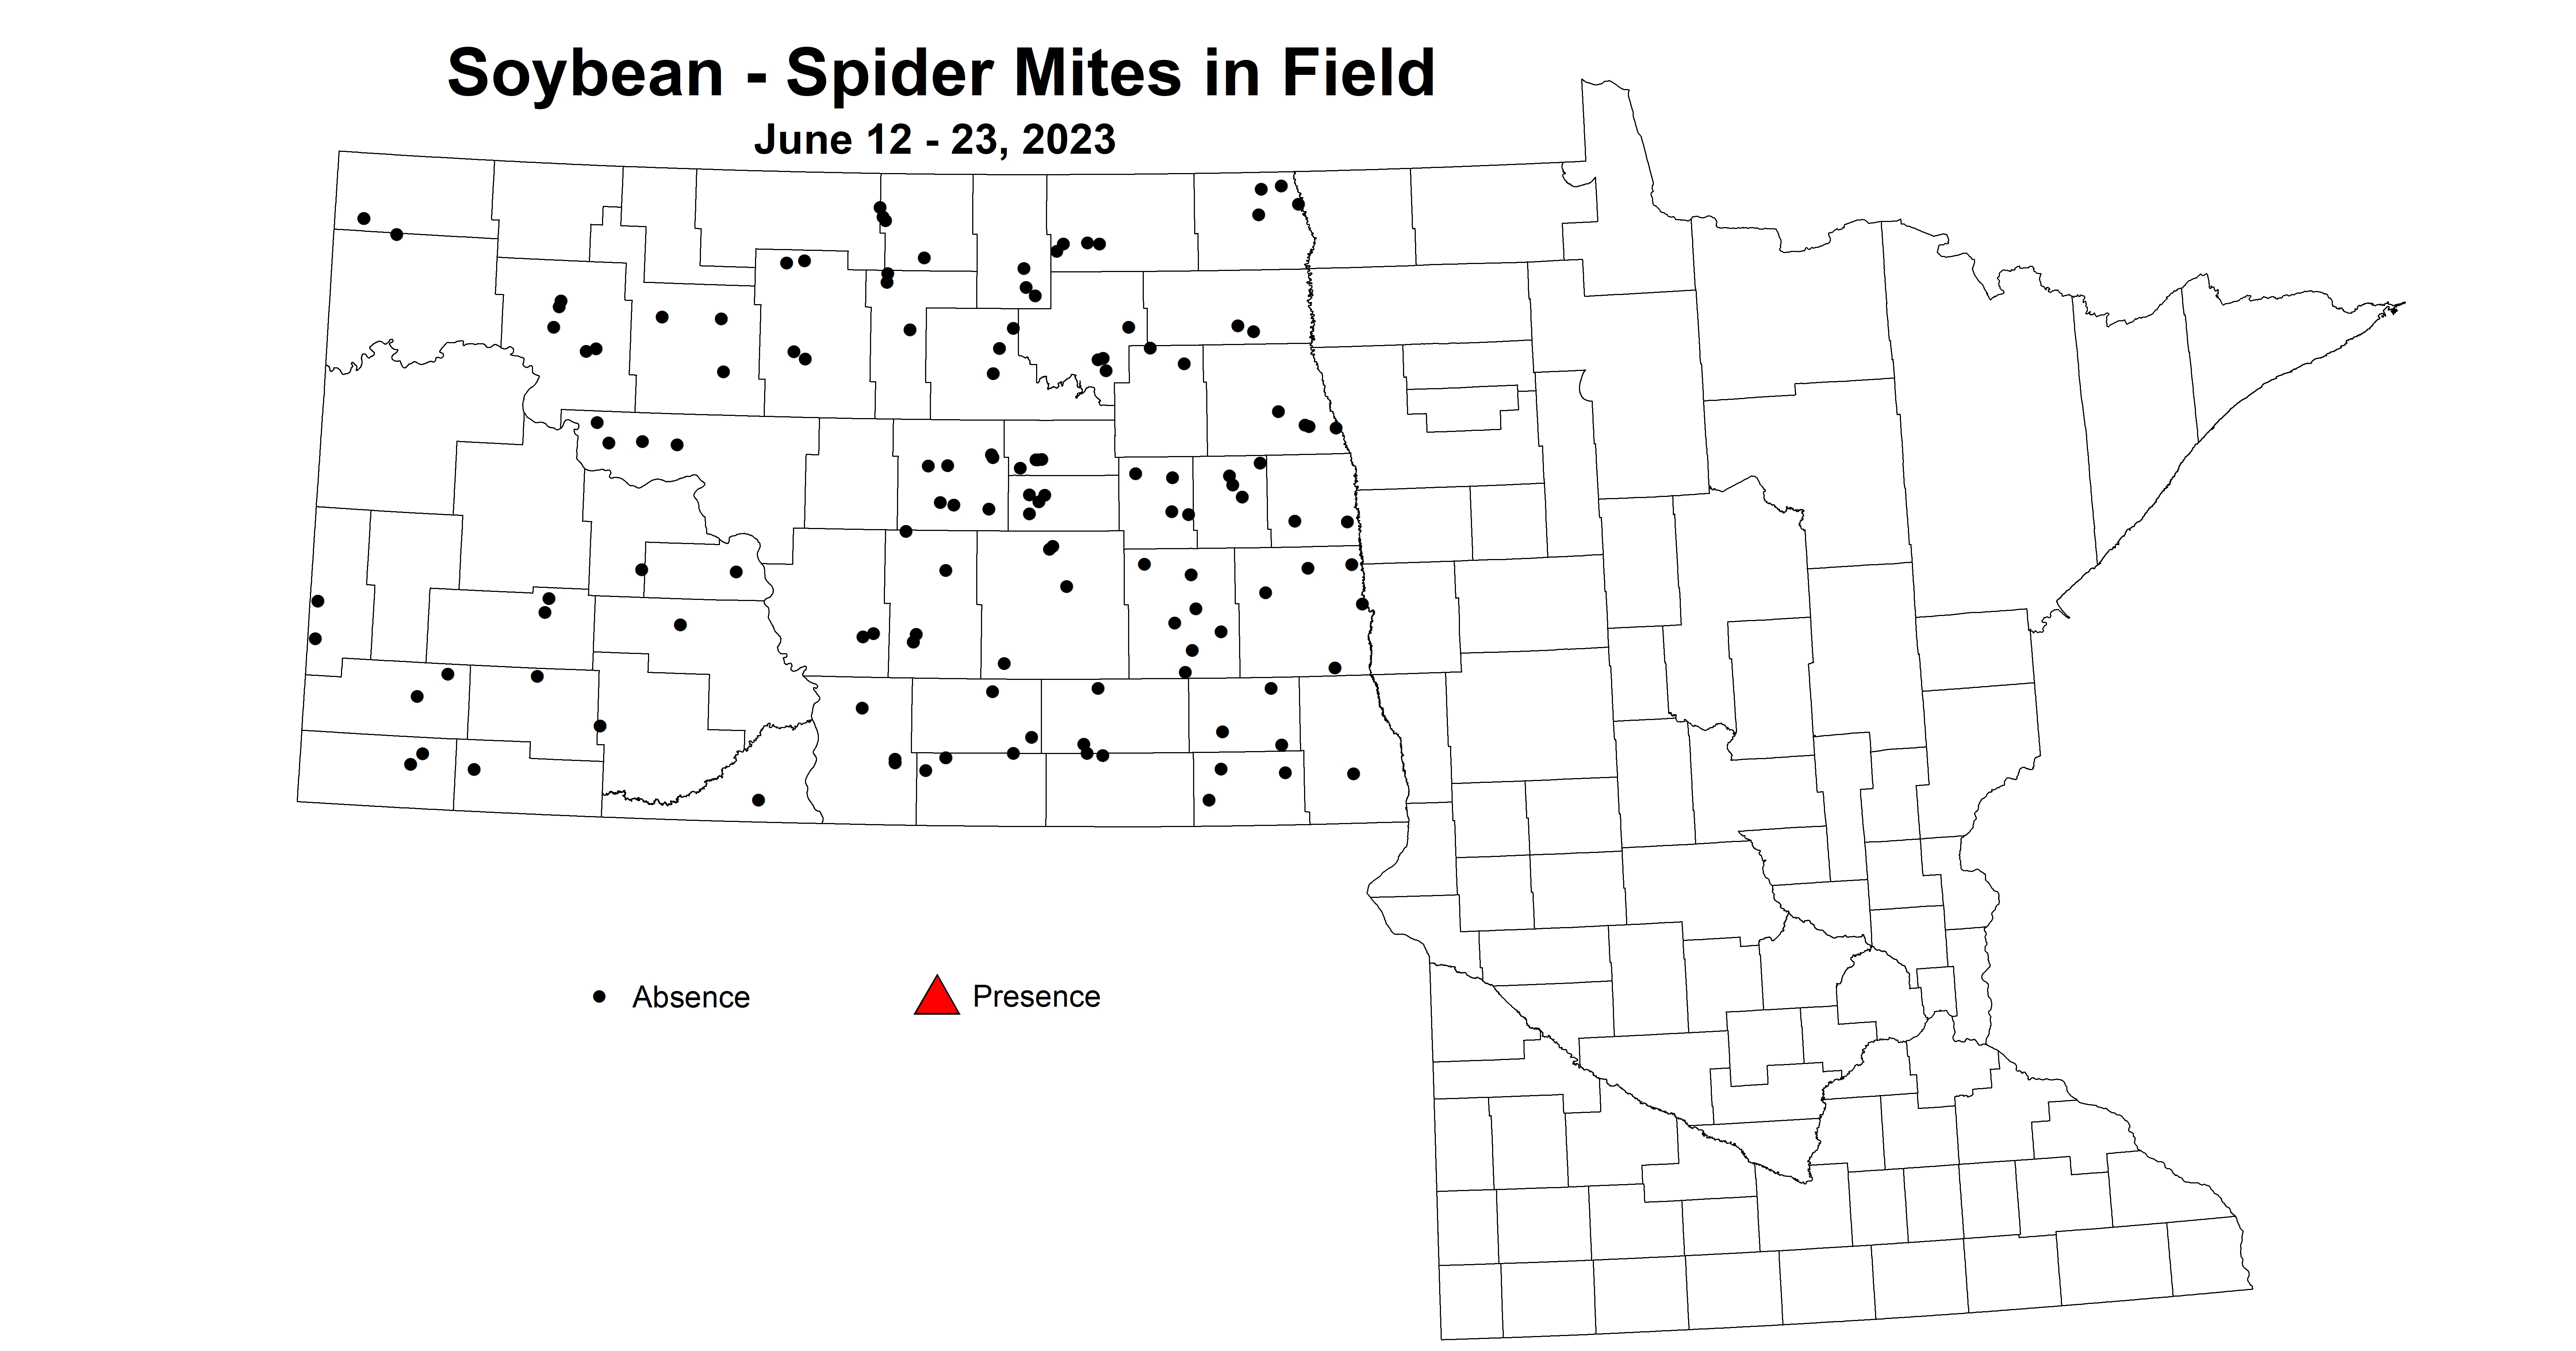 soybean spider mites in field June 12-23 2023 updated